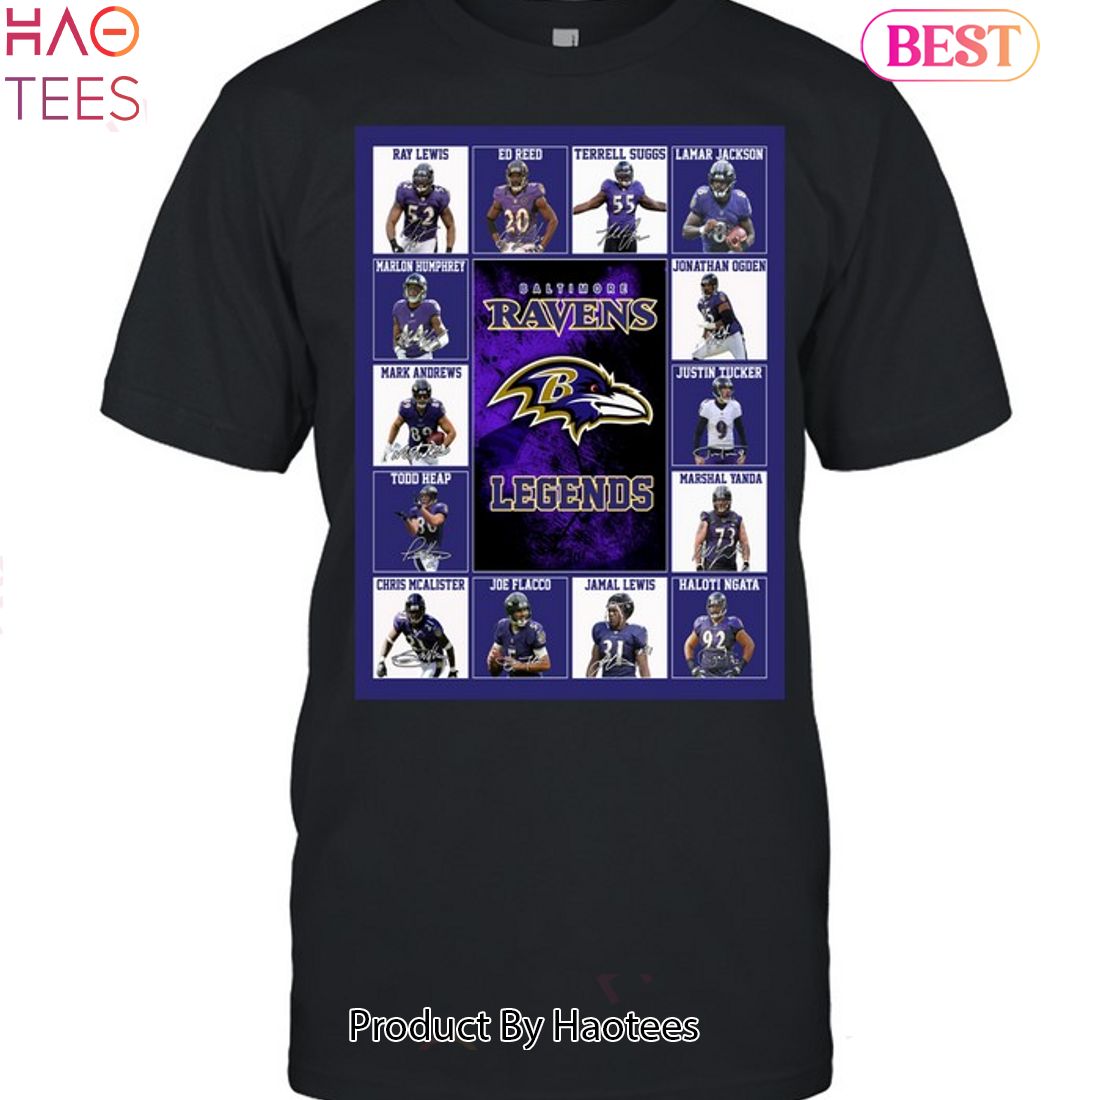 ravens custom shirt